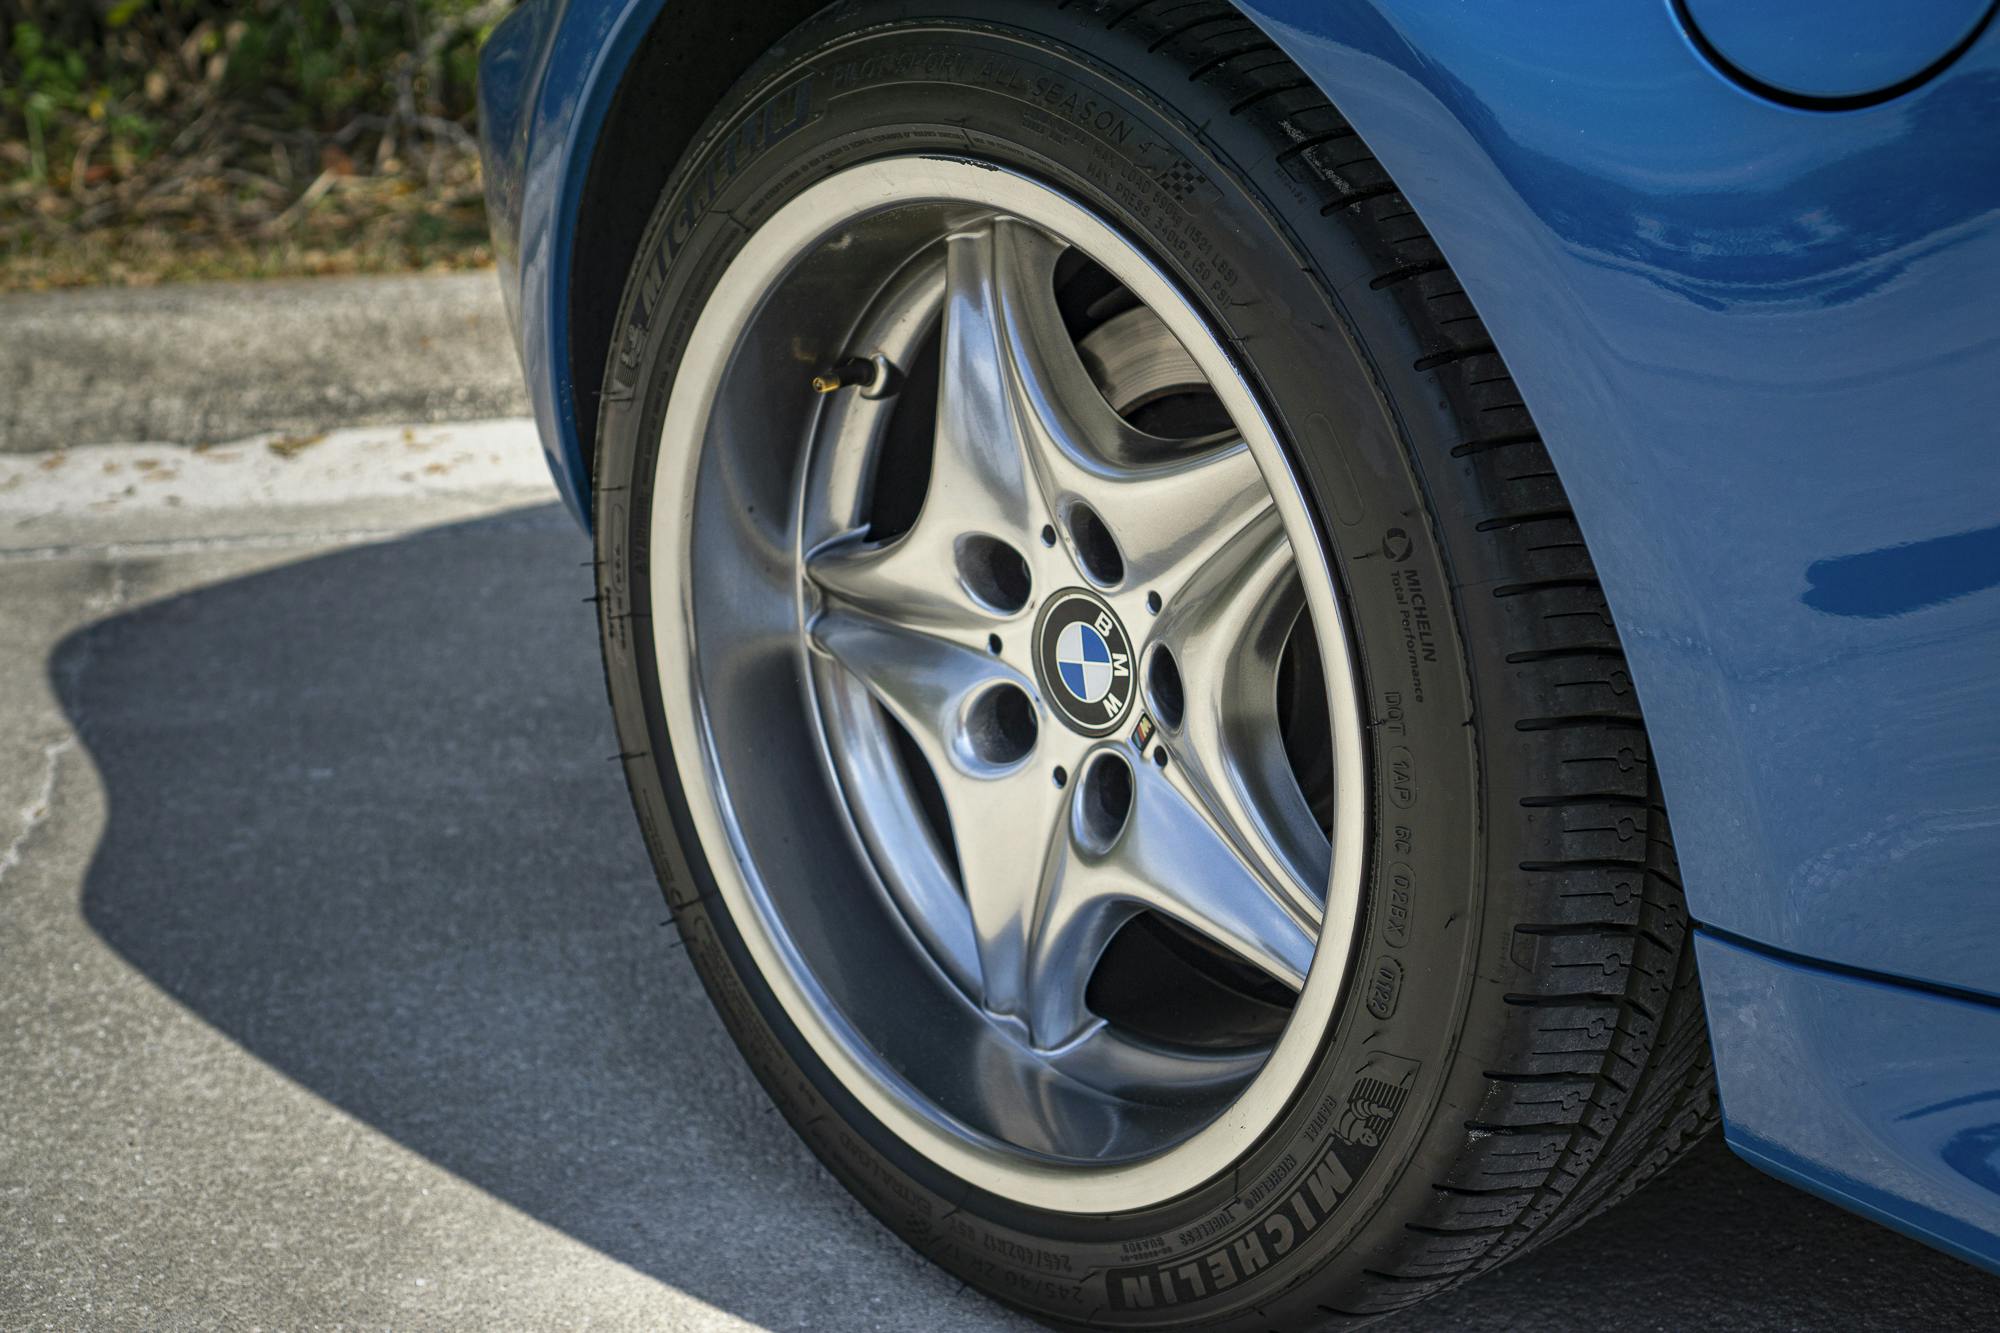 BMW Z3 M wheel tire detail